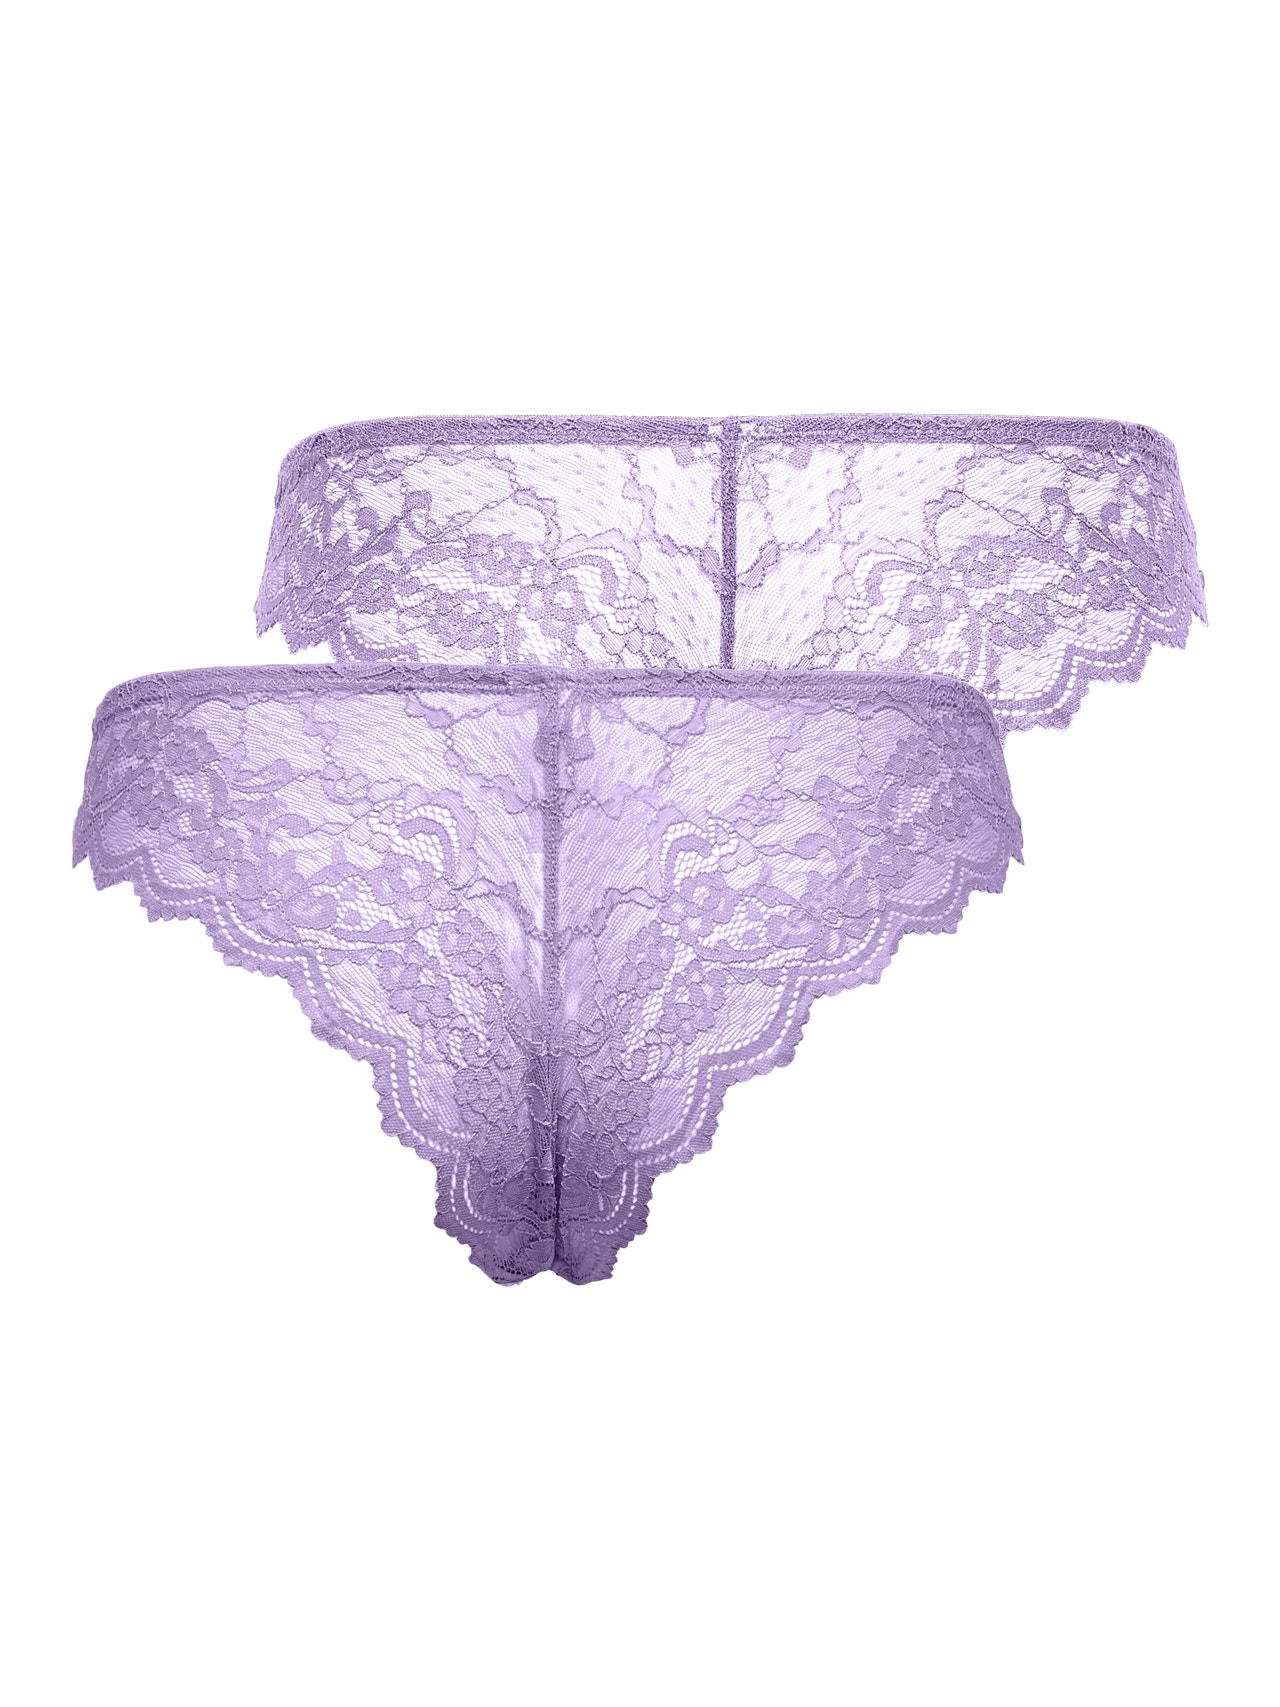 ONLY High waist Underwear -Purple Rose - 15283598